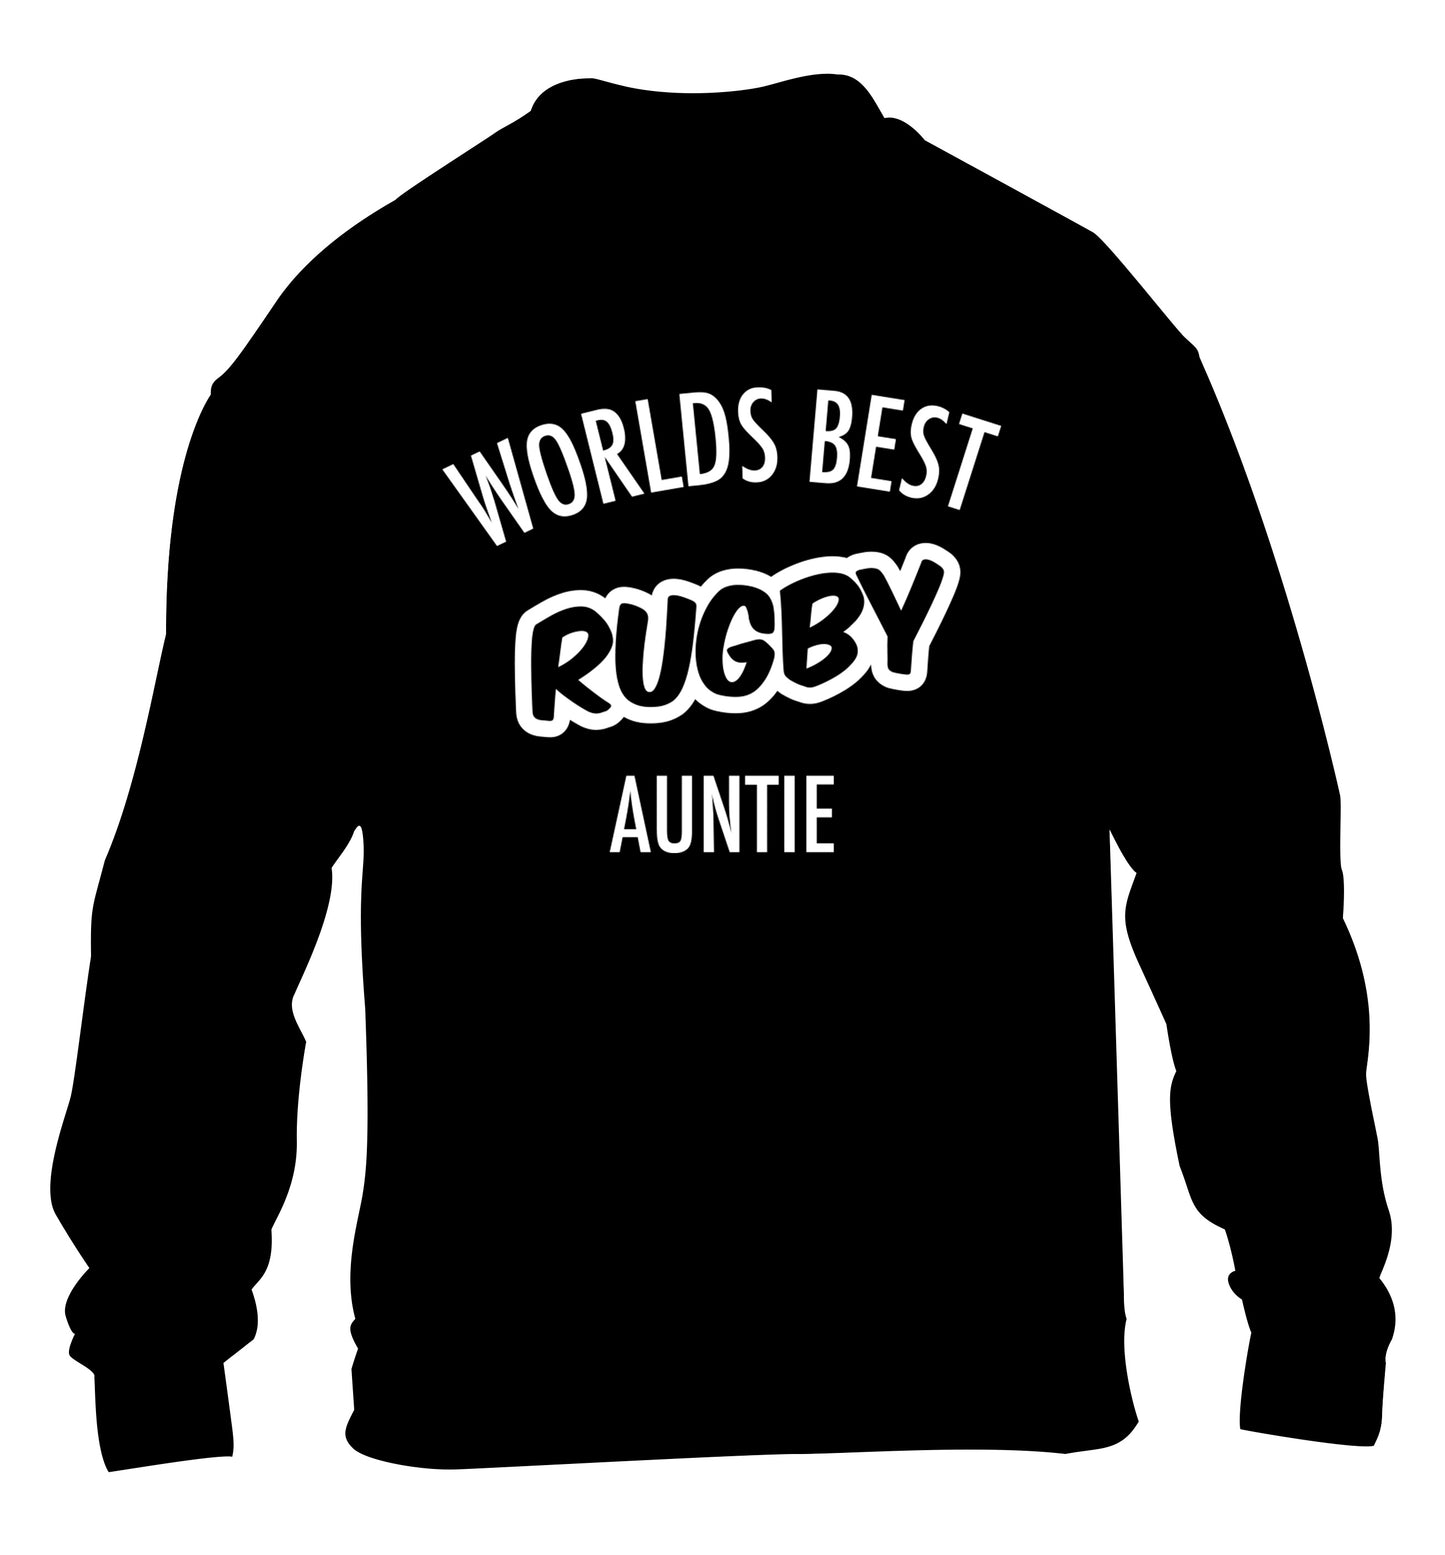 Worlds best rugby auntie children's black sweater 12-13 Years